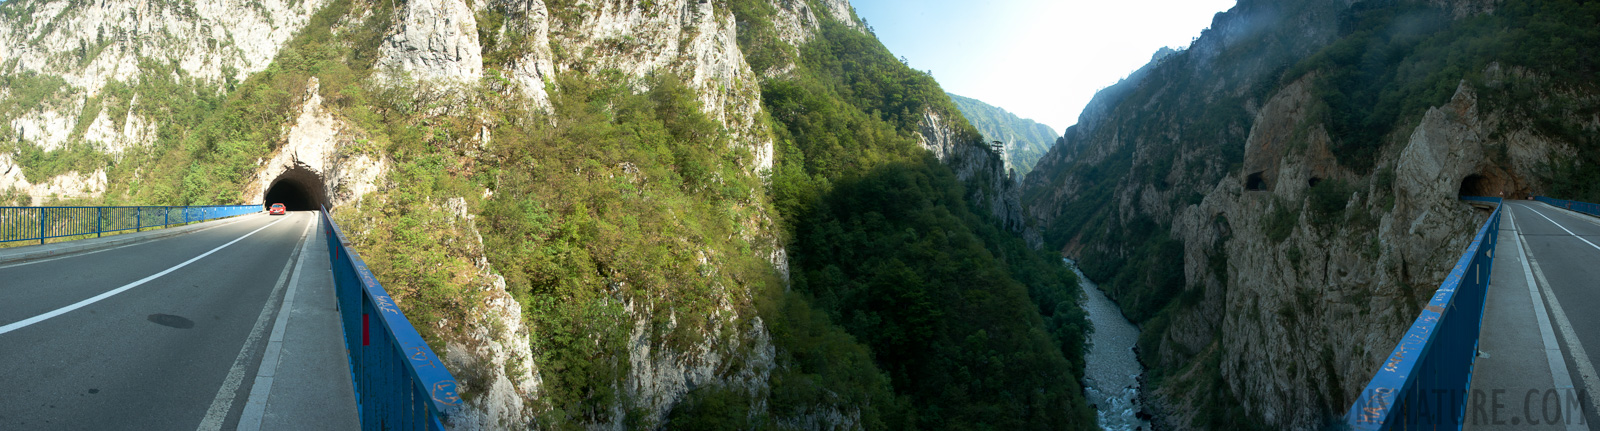 Montenegro -  [28 mm, 1/200 Sek. bei f / 9.0, ISO 1000]